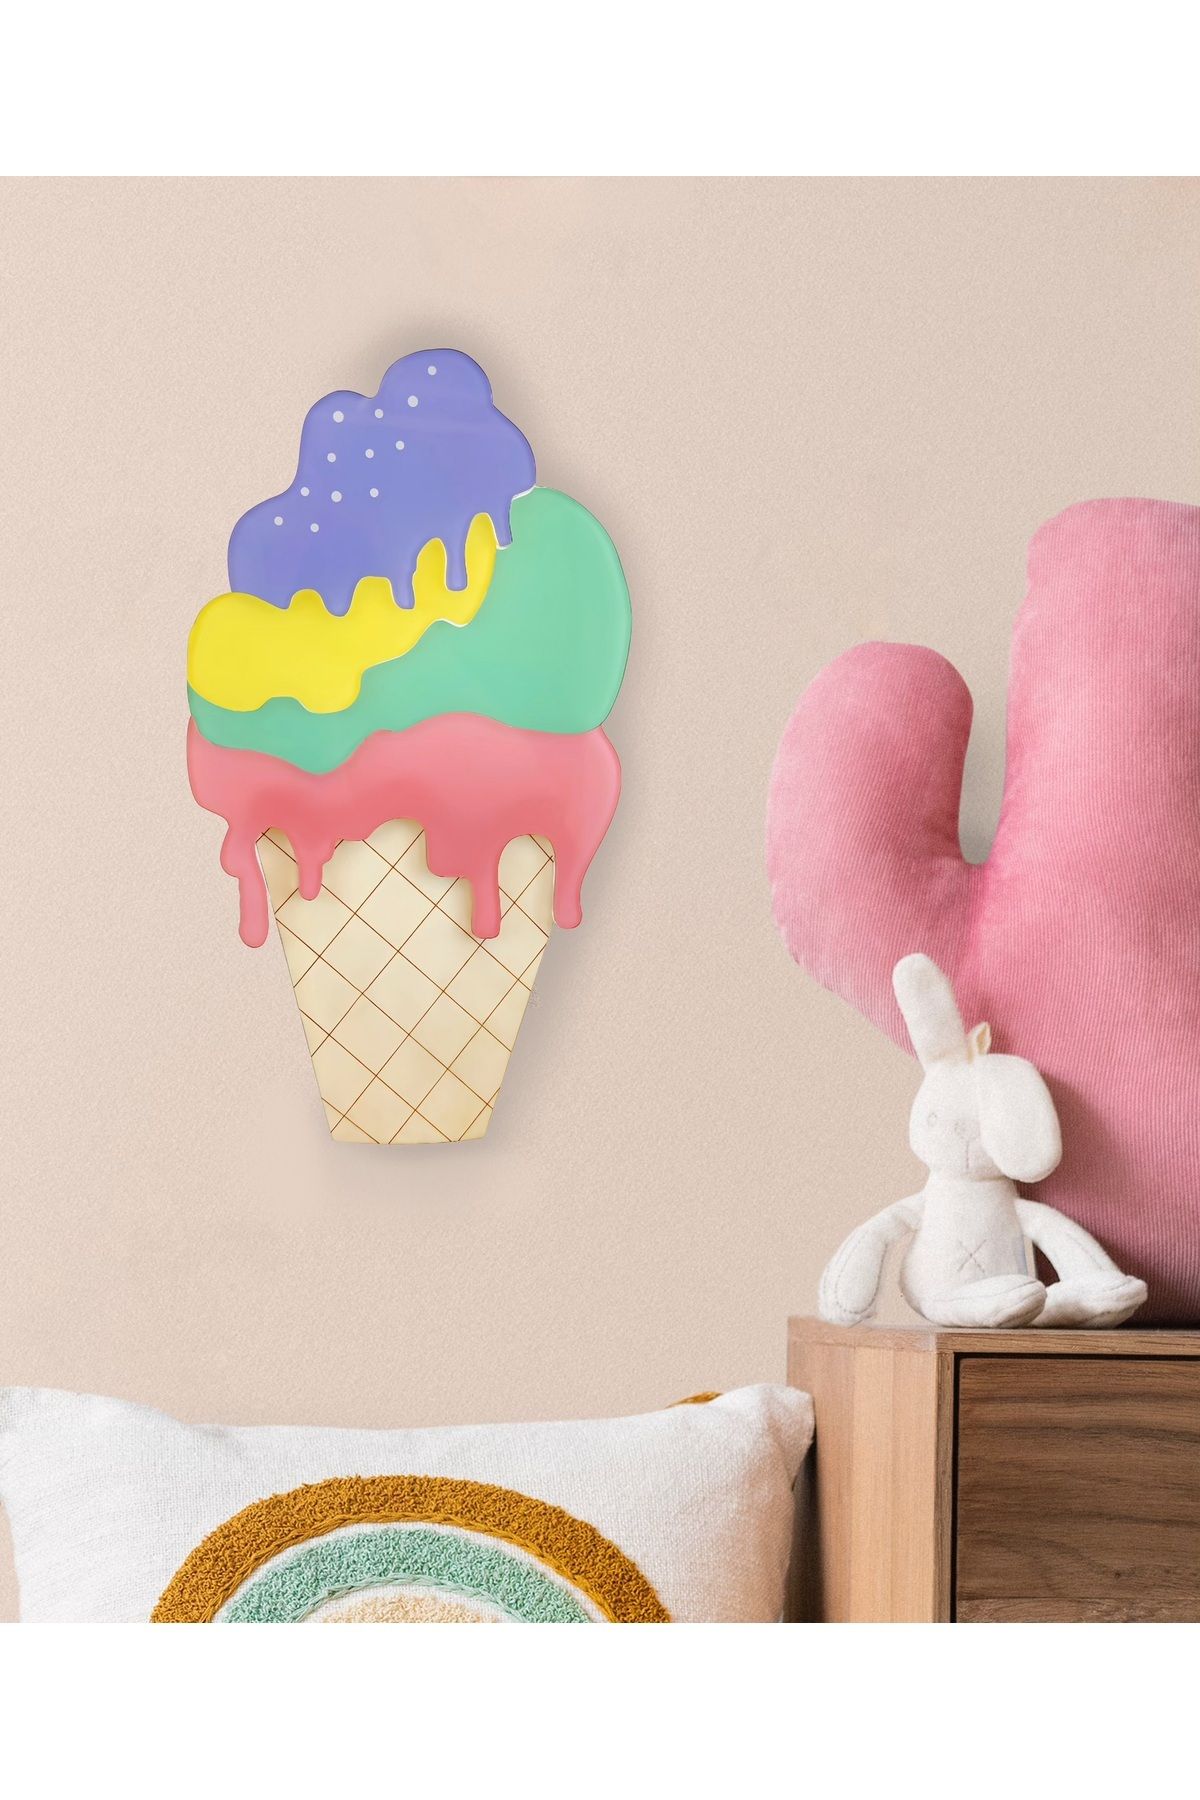 LilyMama Çocuk Odası İçin Dondurma Temalı Aydınlatma-Eğlenceli Dekorasyon Lambası-Dekoratif ve Modern Tasarım